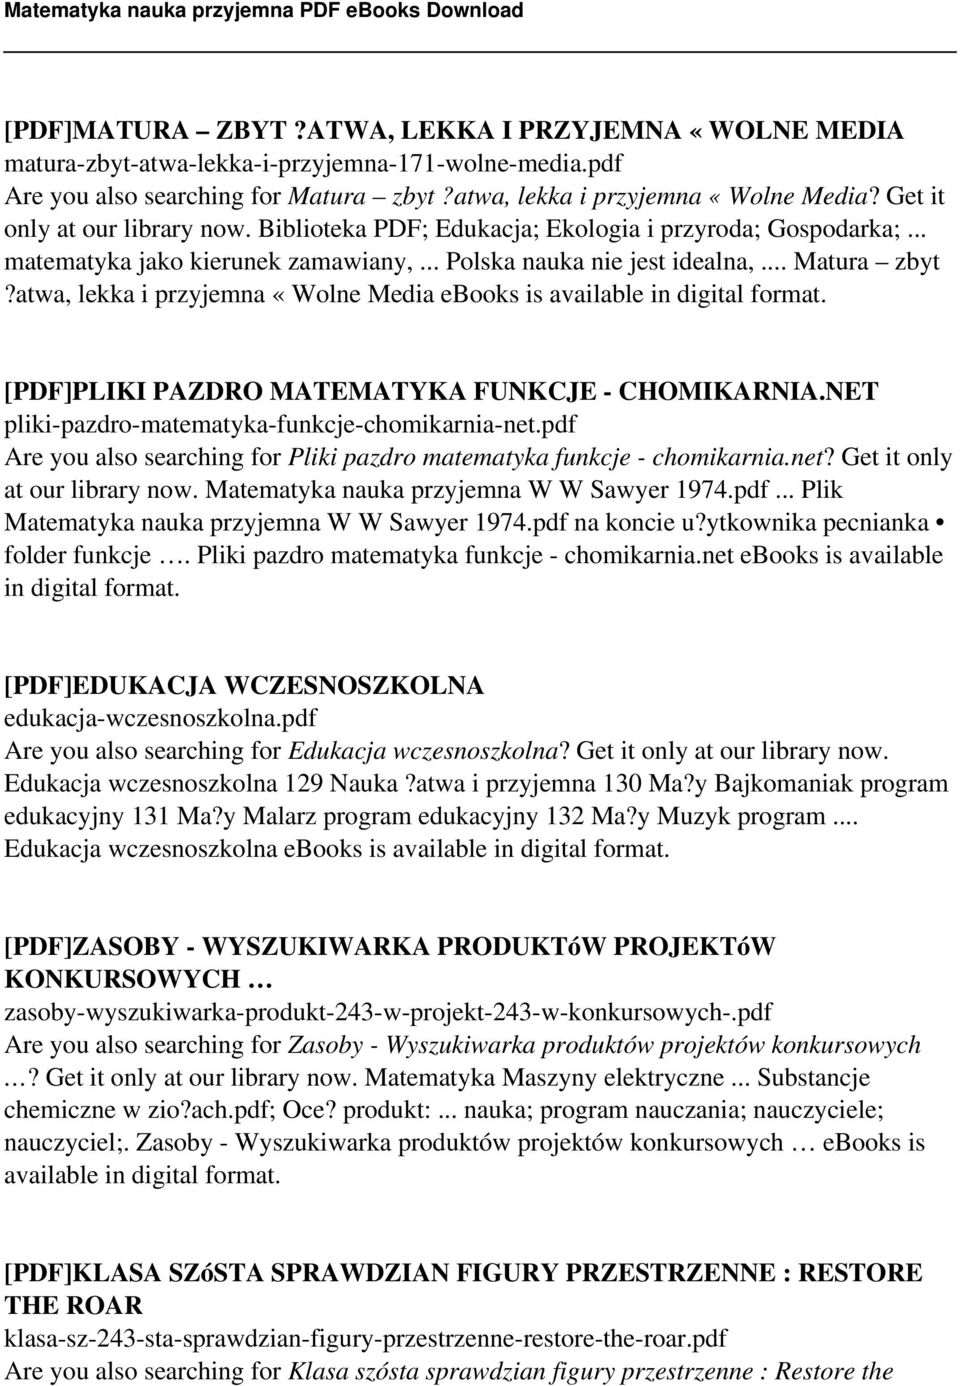 atwa, lekka i przyjemna «Wolne Media ebooks is available in digital format. [PDF]PLIKI PAZDRO MATEMATYKA FUNKCJE - CHOMIKARNIA.NET pliki-pazdro-matematyka-funkcje-chomikarnia-net.